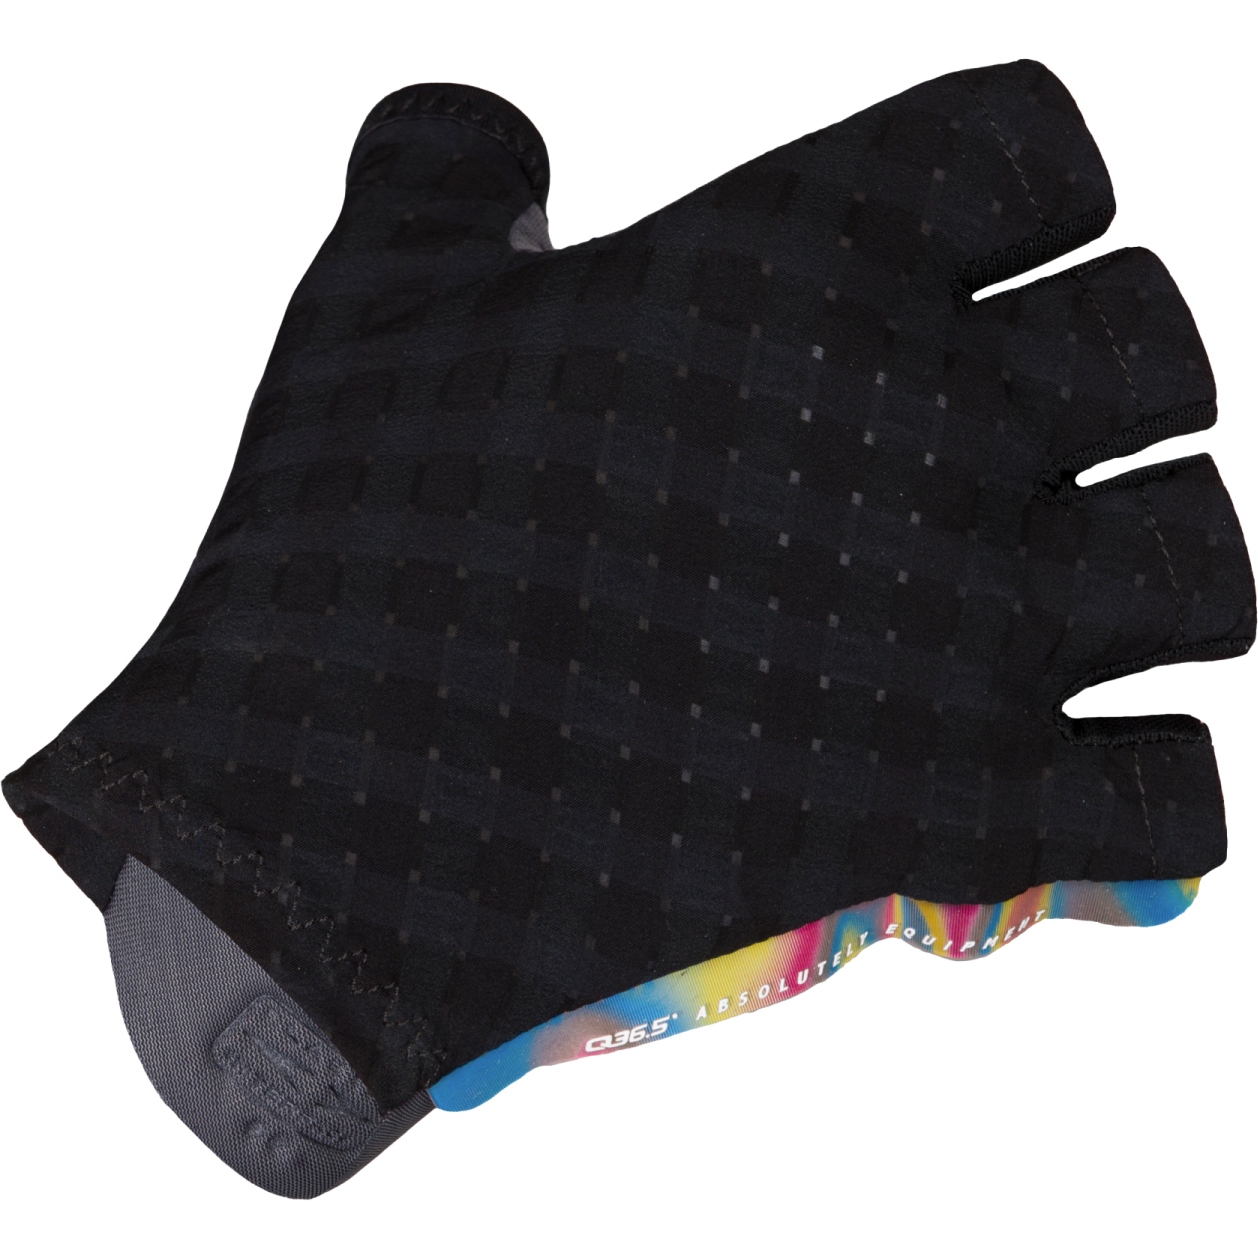 Productfoto van Q36.5 Clima Zomer Handschoenen met Korte Vingers - zwart